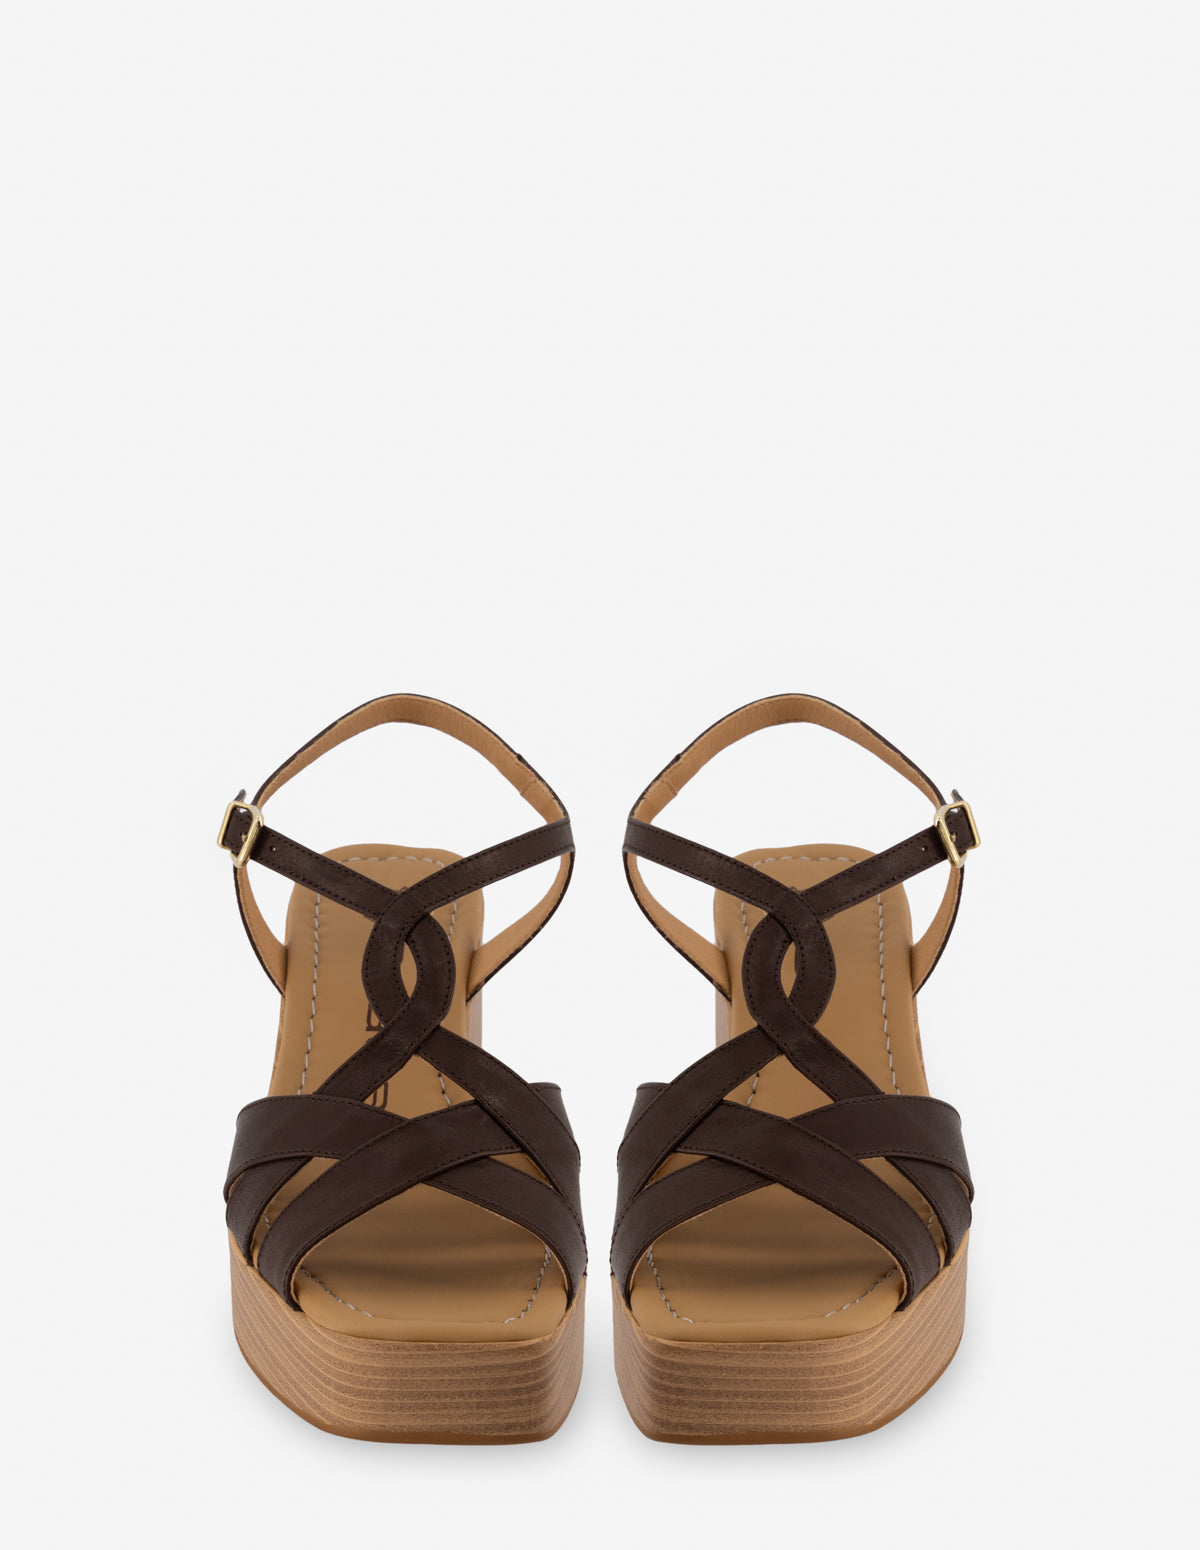 Sandalia de piel napa en color marrón con plataforma media para mujer